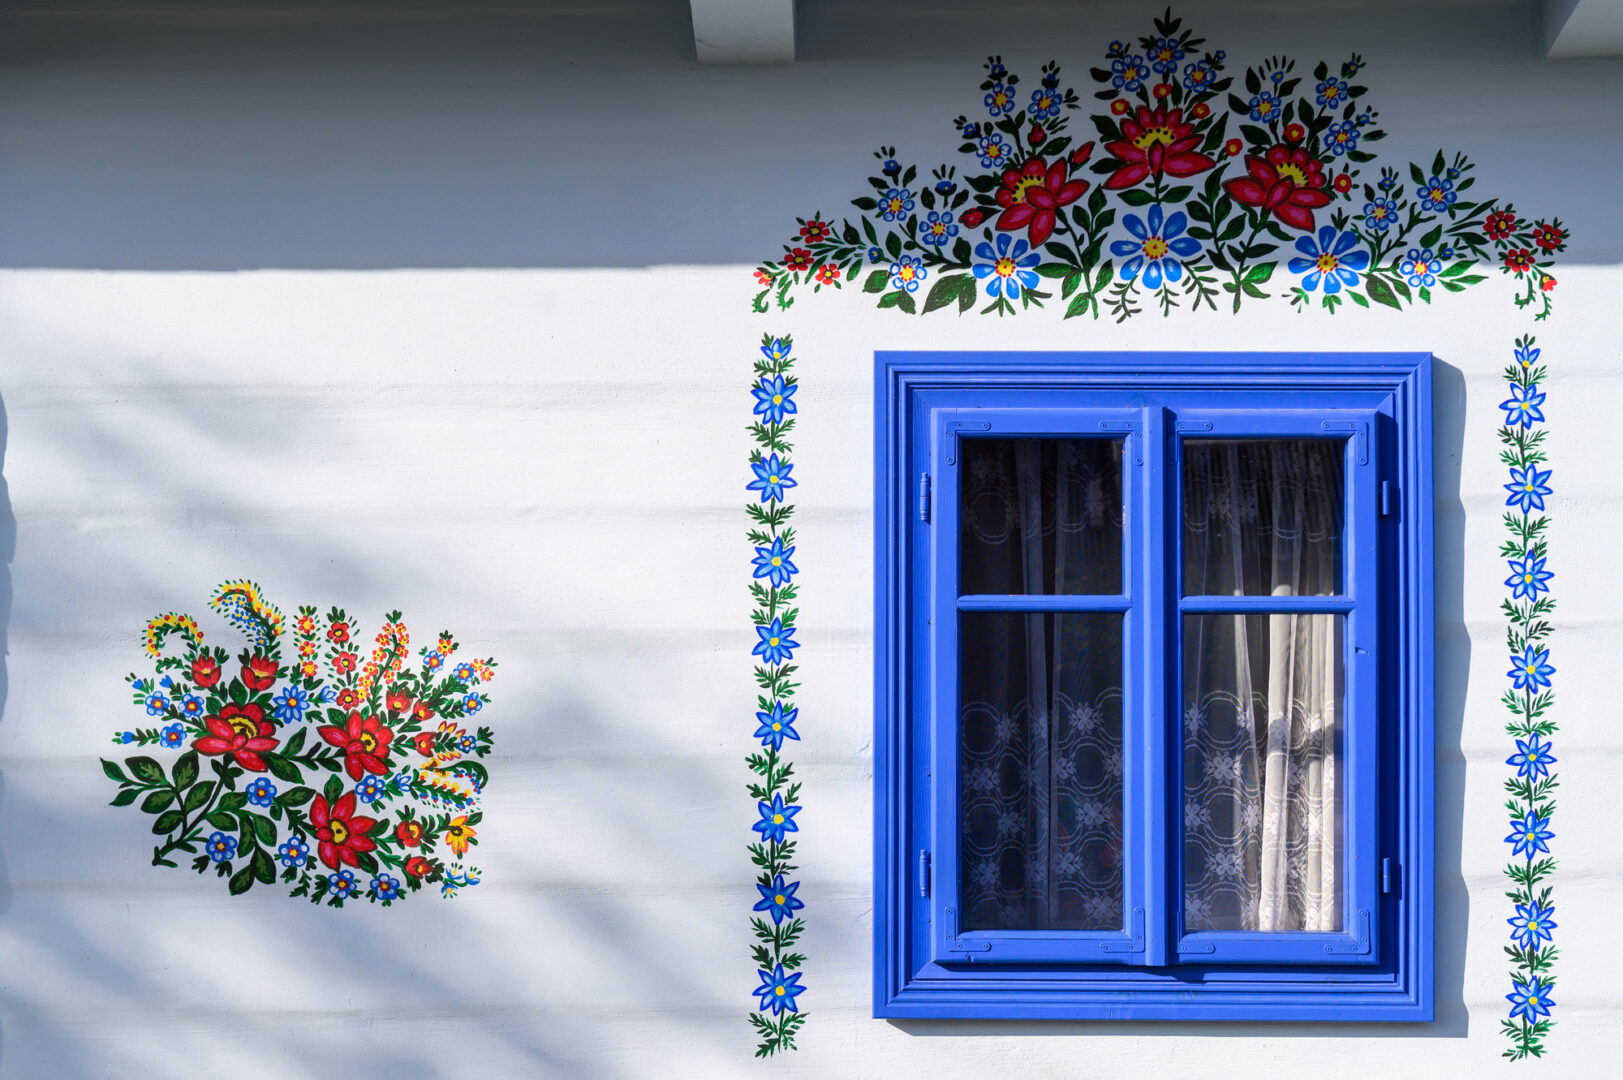 הכפר בפולין שפרחים מצוירים על כל בתיו